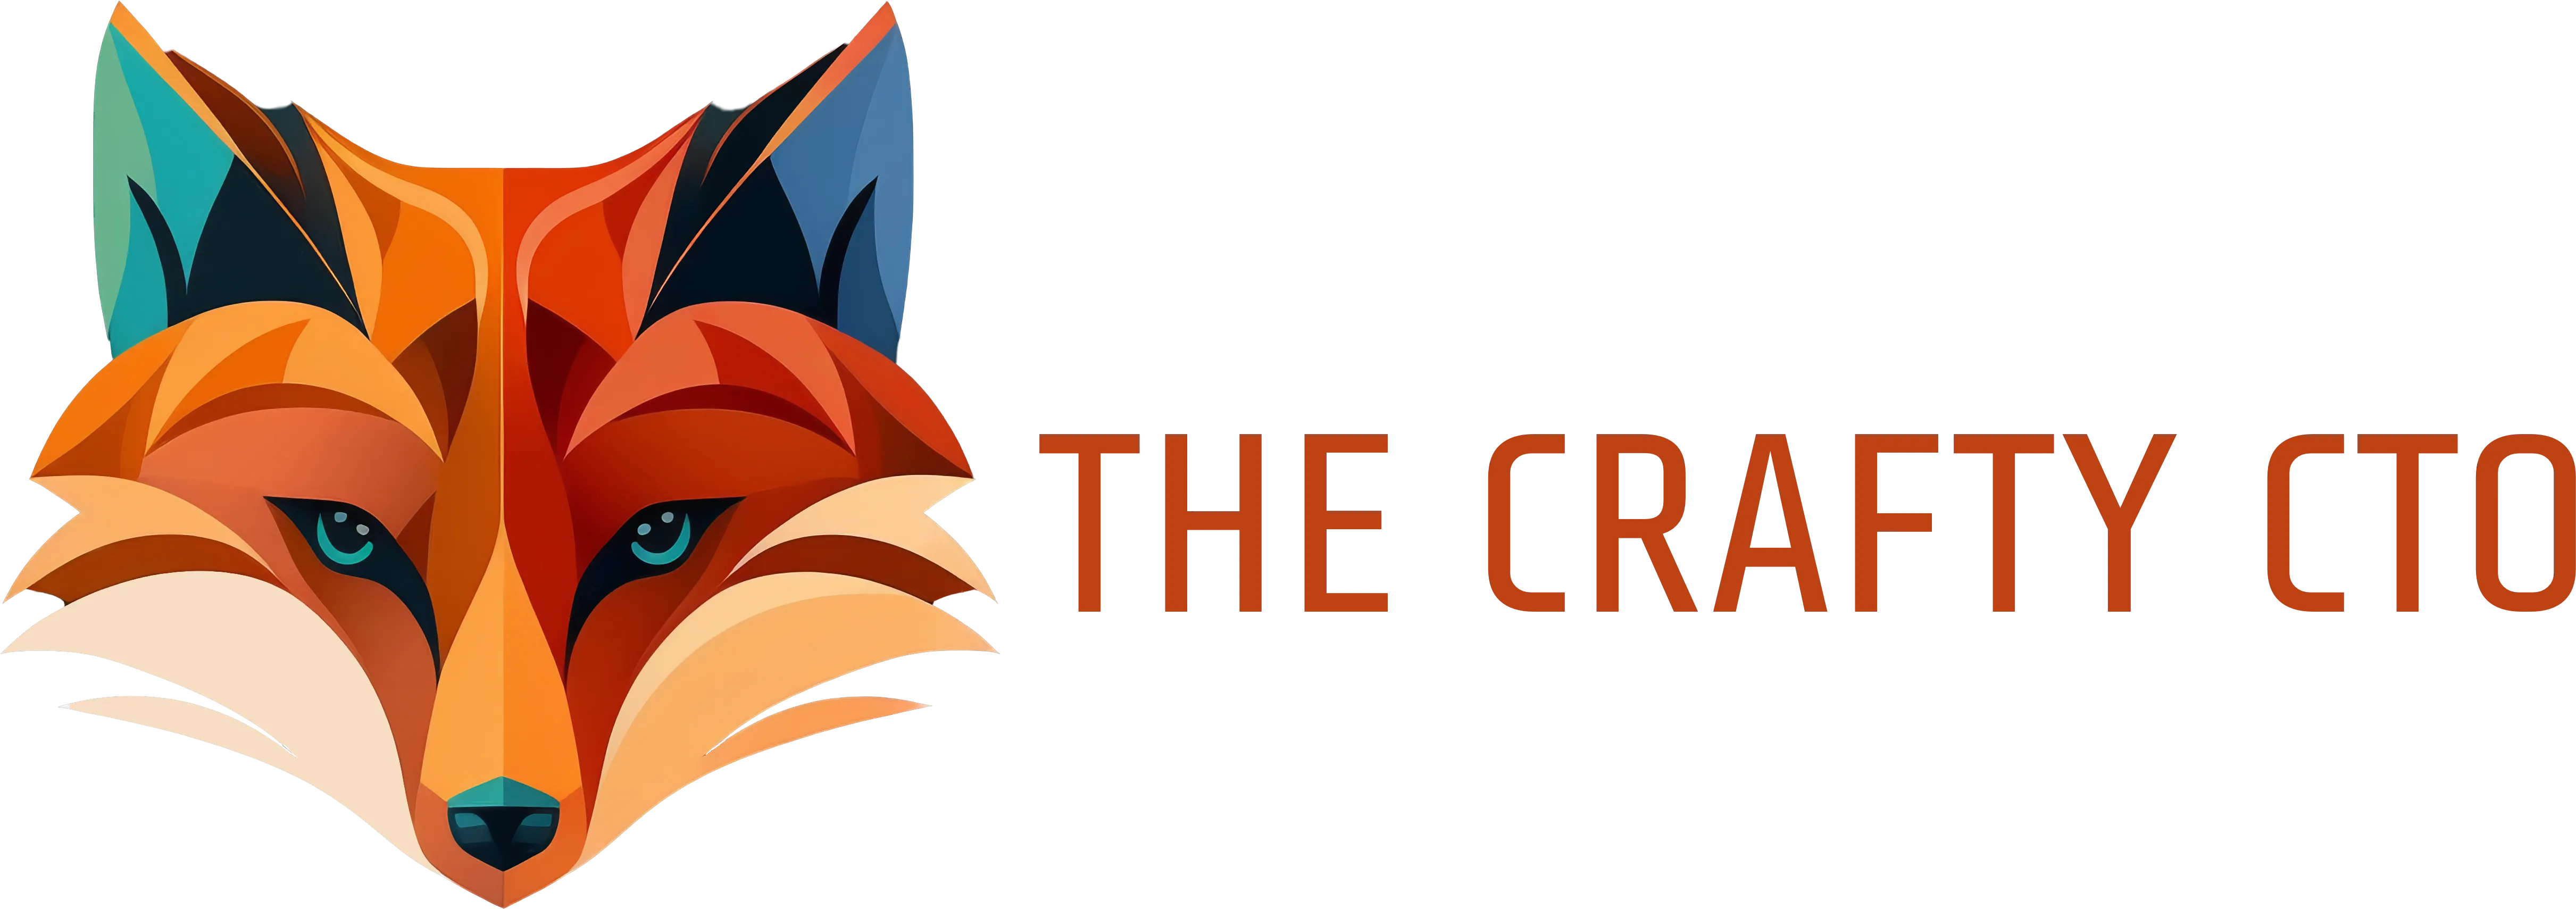 Crafty fox logo